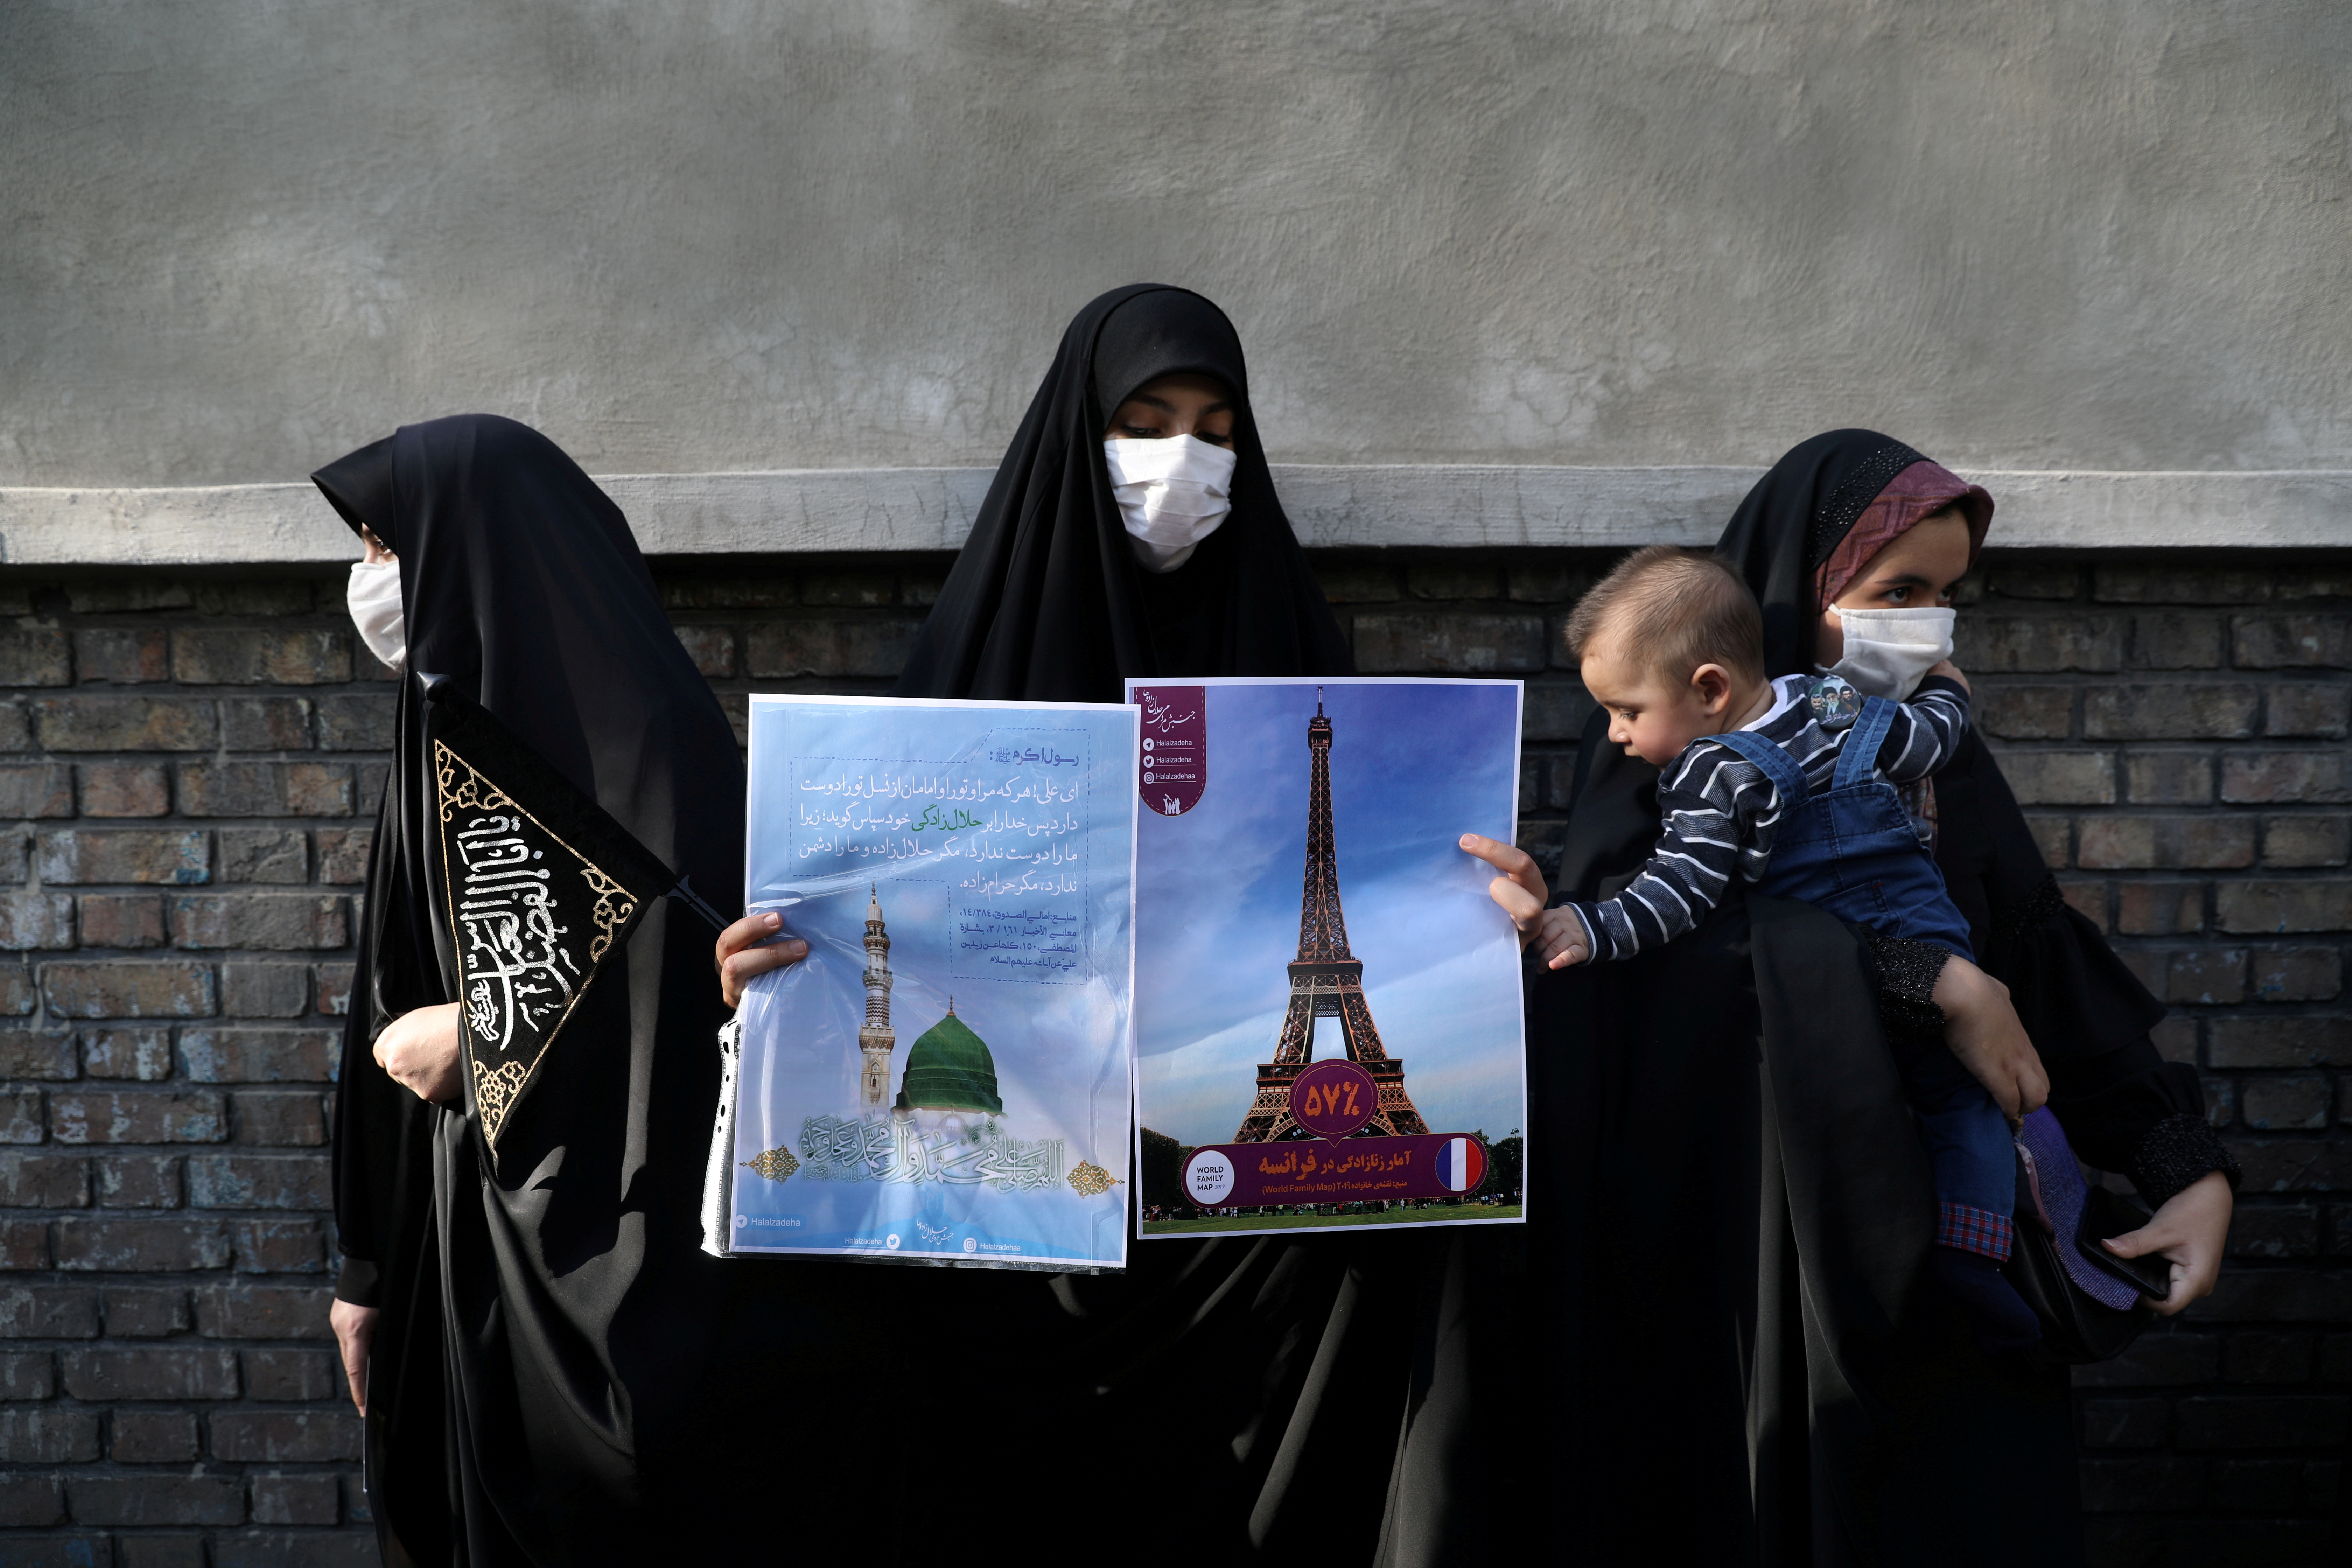 Una manifestante protesta contra las caricaturas de Mahoma publicada por la publicación Charlie Hebdo. Majid Asgaripour/WANA (West Asia News Agency) via REUTERS 